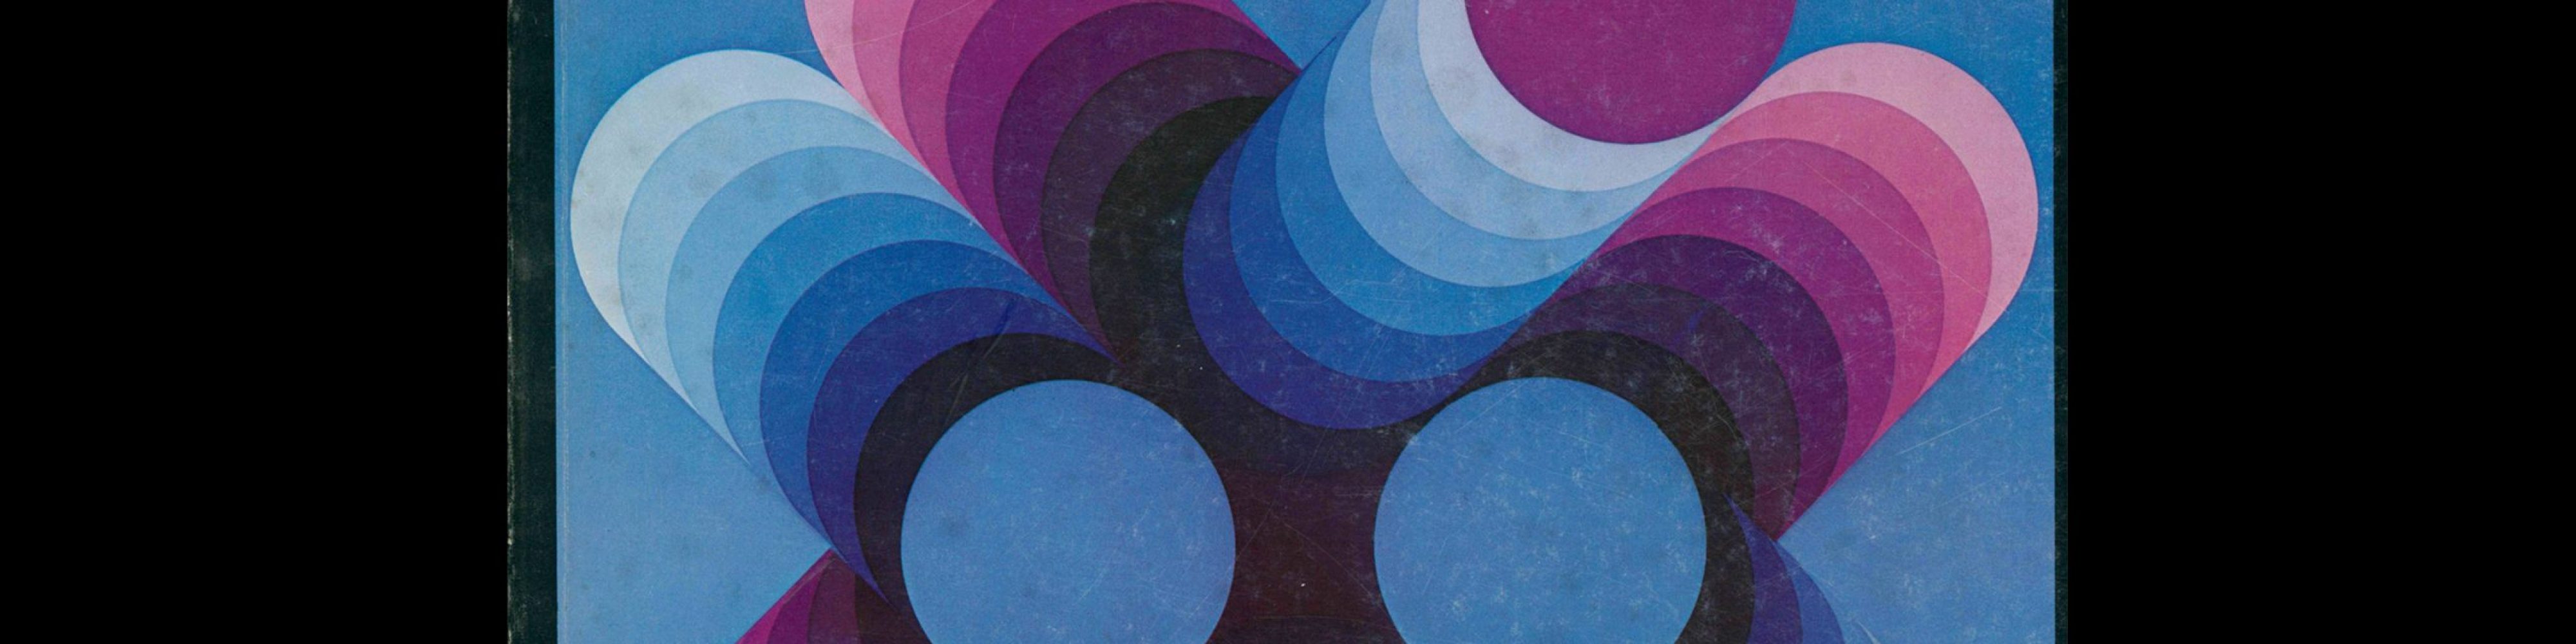 Novum Gebrauchsgraphik, 1, 1979. Cover design by Victor Vasarely